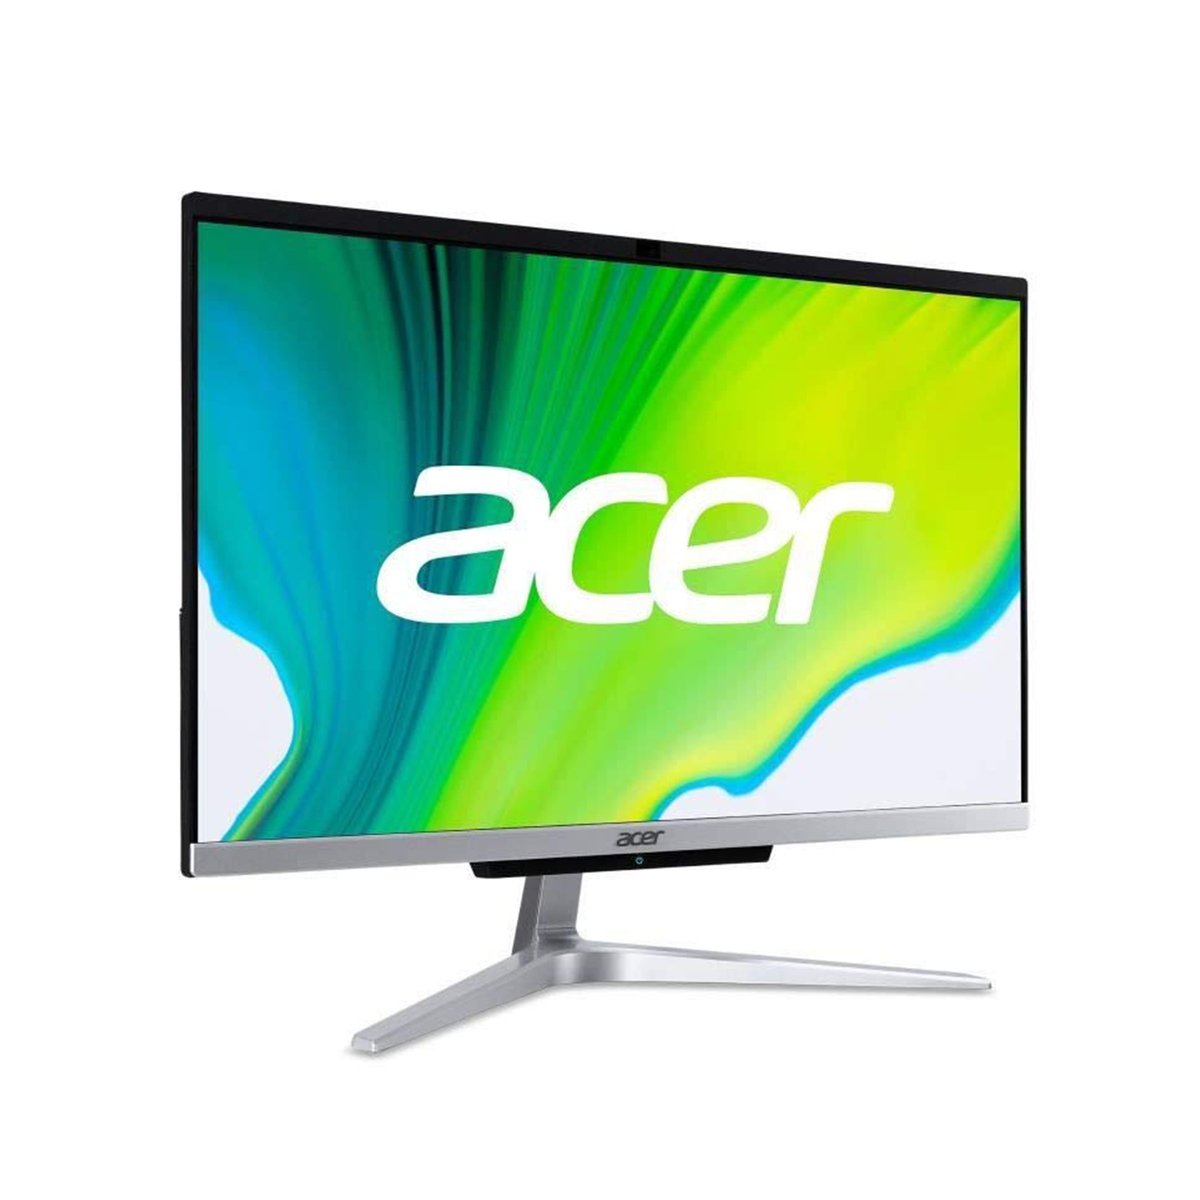 Acer Aspire C22-1650 All-in-One Desktop(DQ.BG7EM.001),Intel Core i3-1115G4,4GB RAM,1TB HDD,21.5" FHD,Windows 10,Silver